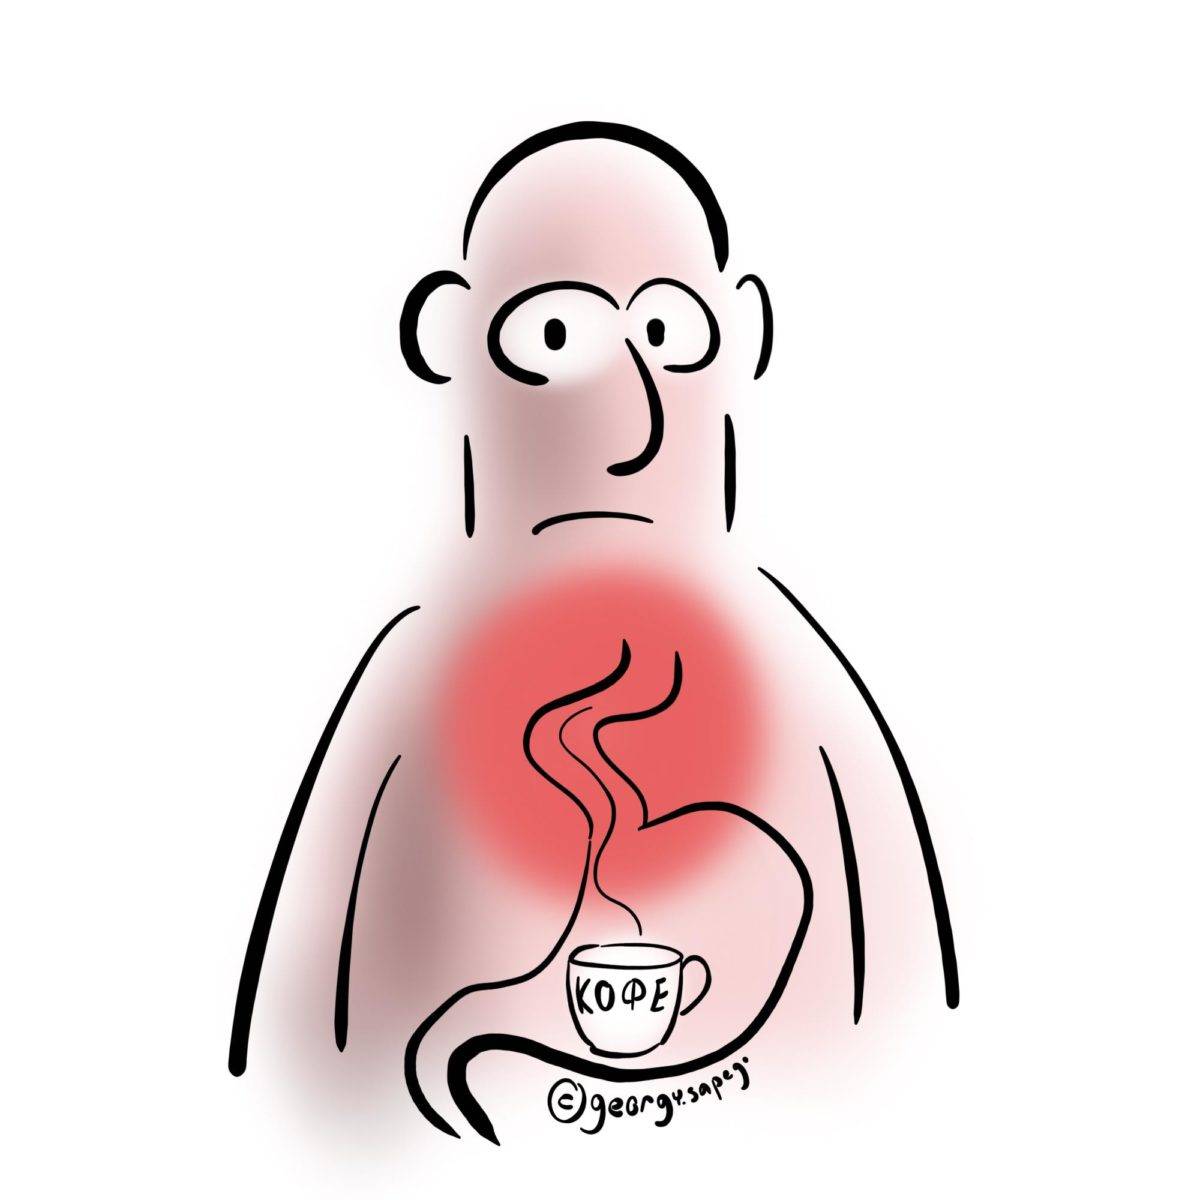 Изжога от кофе - почему появляется и какой кофе безопаснее